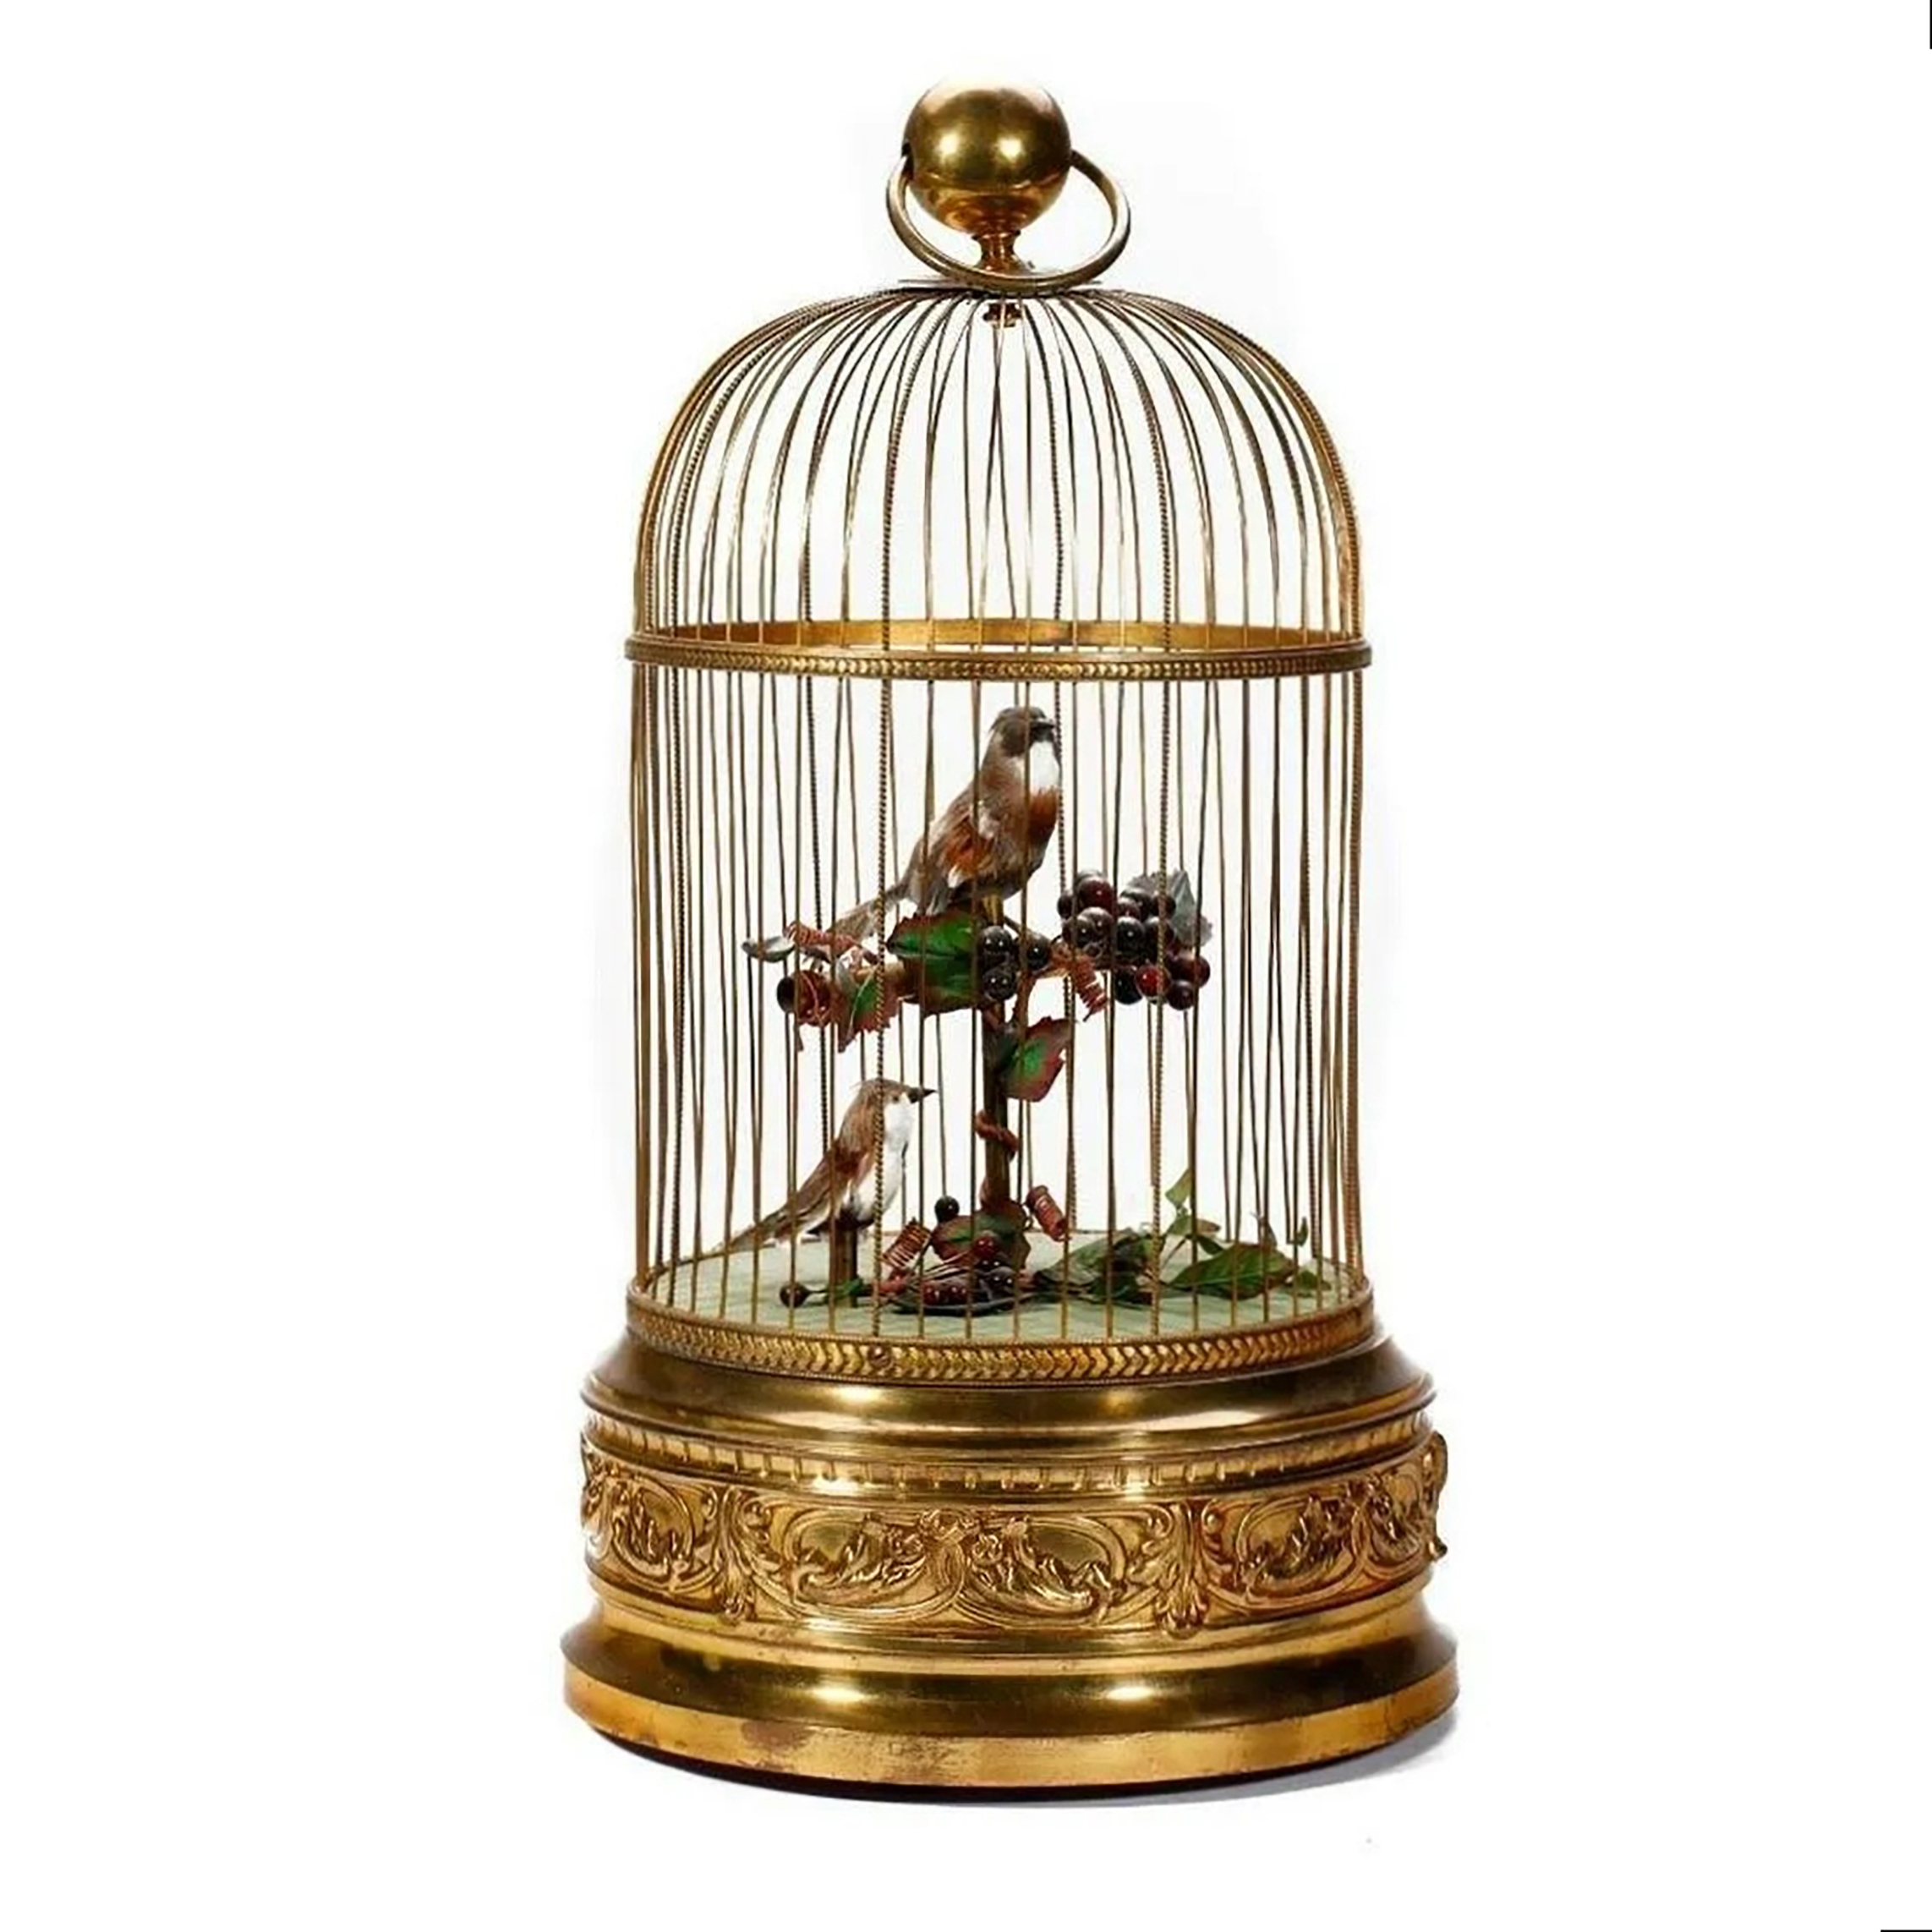  French gilt birdcage automaton, est. $800-$1,200